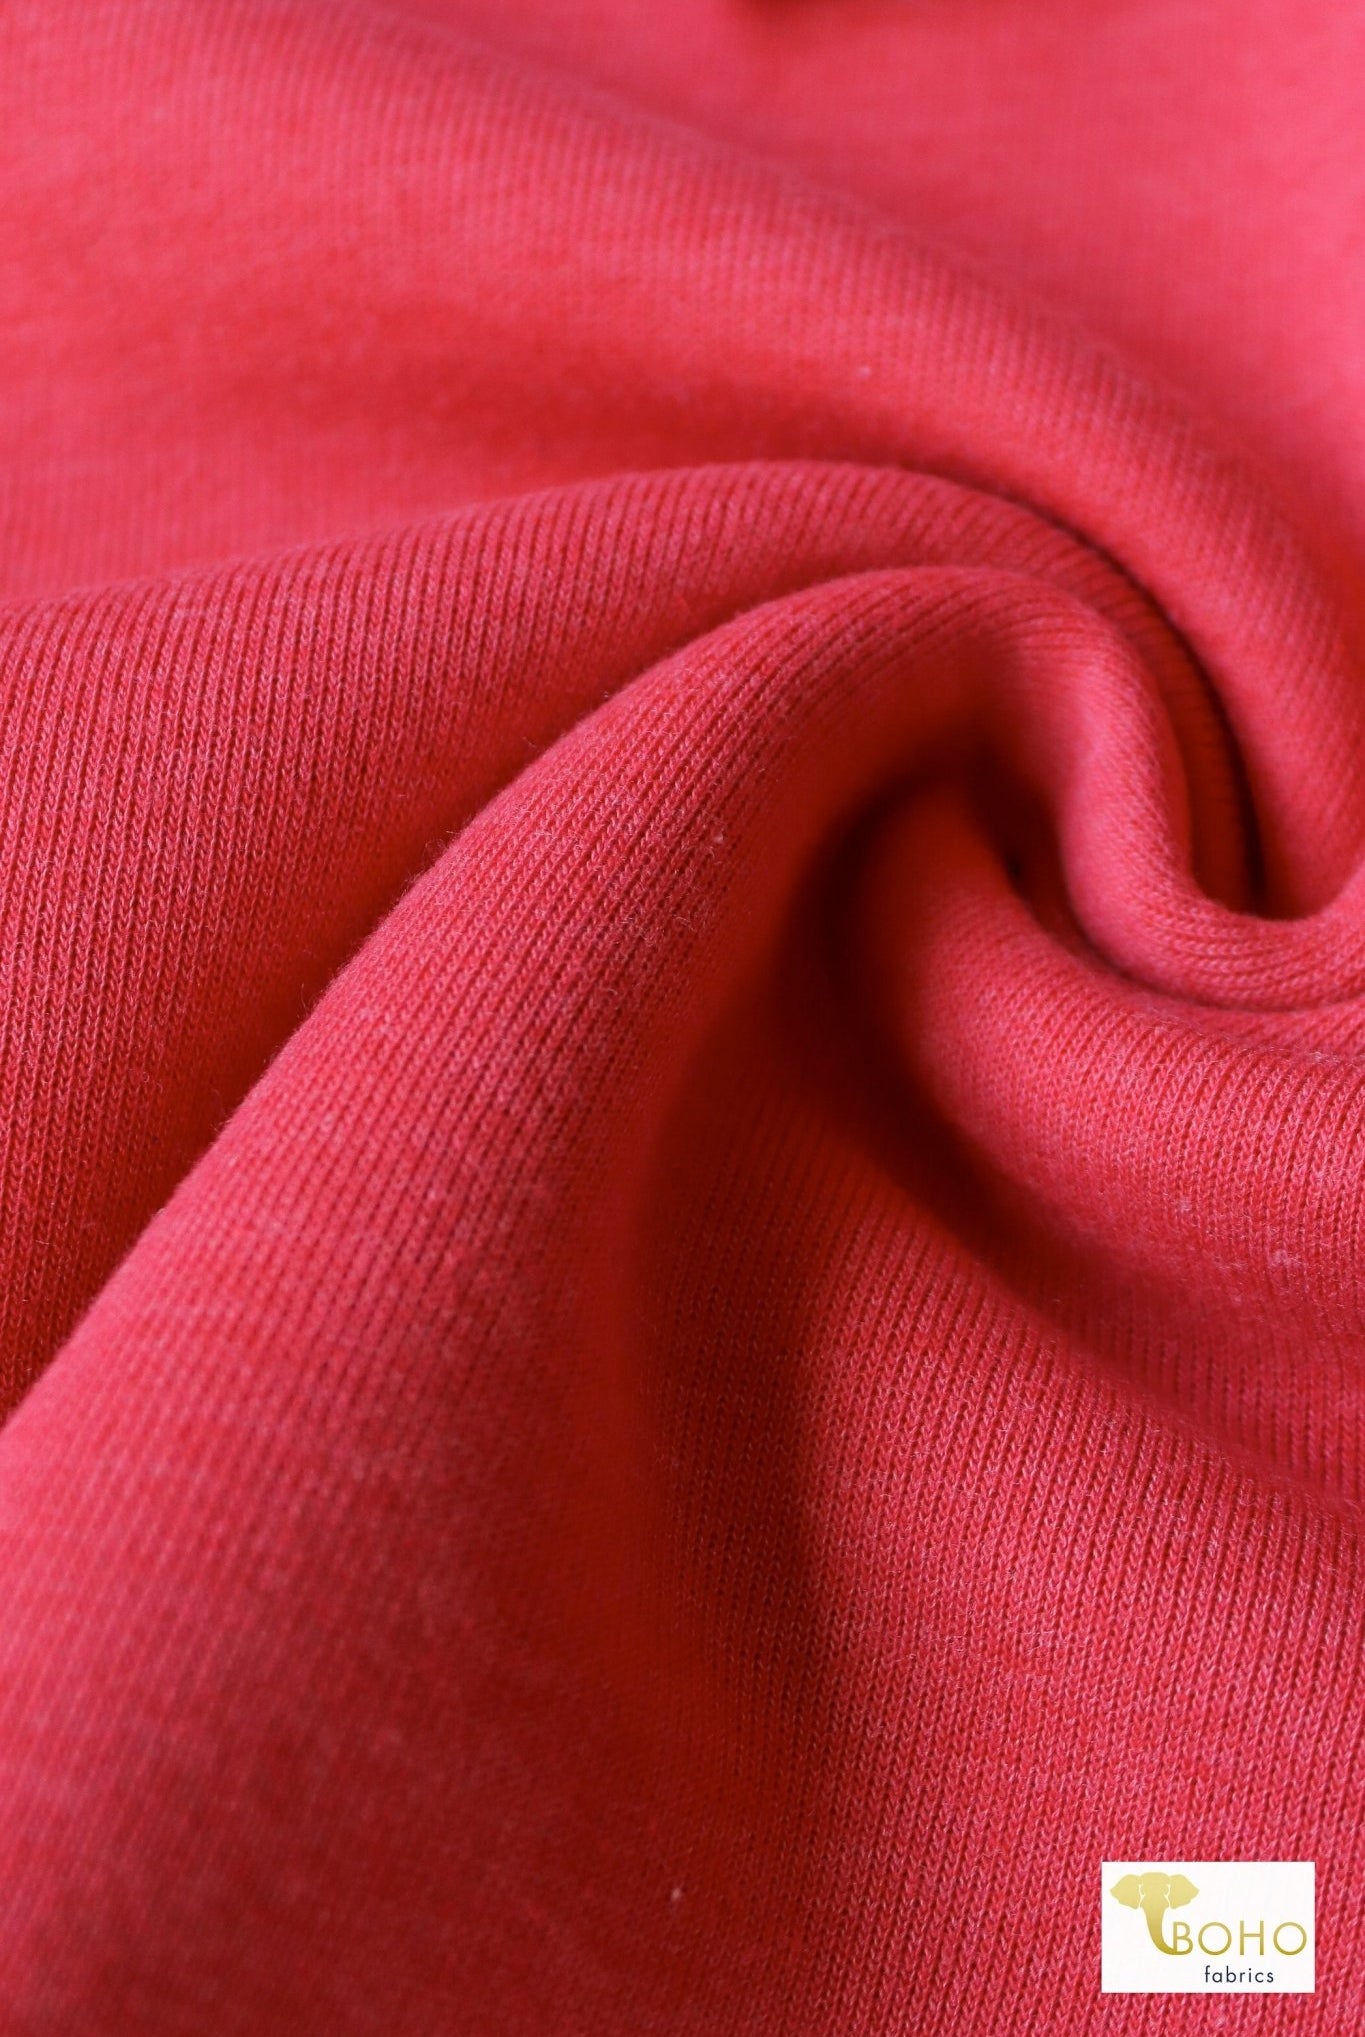 Rustic Red, Sweatshirt Fleece. - Boho Fabrics